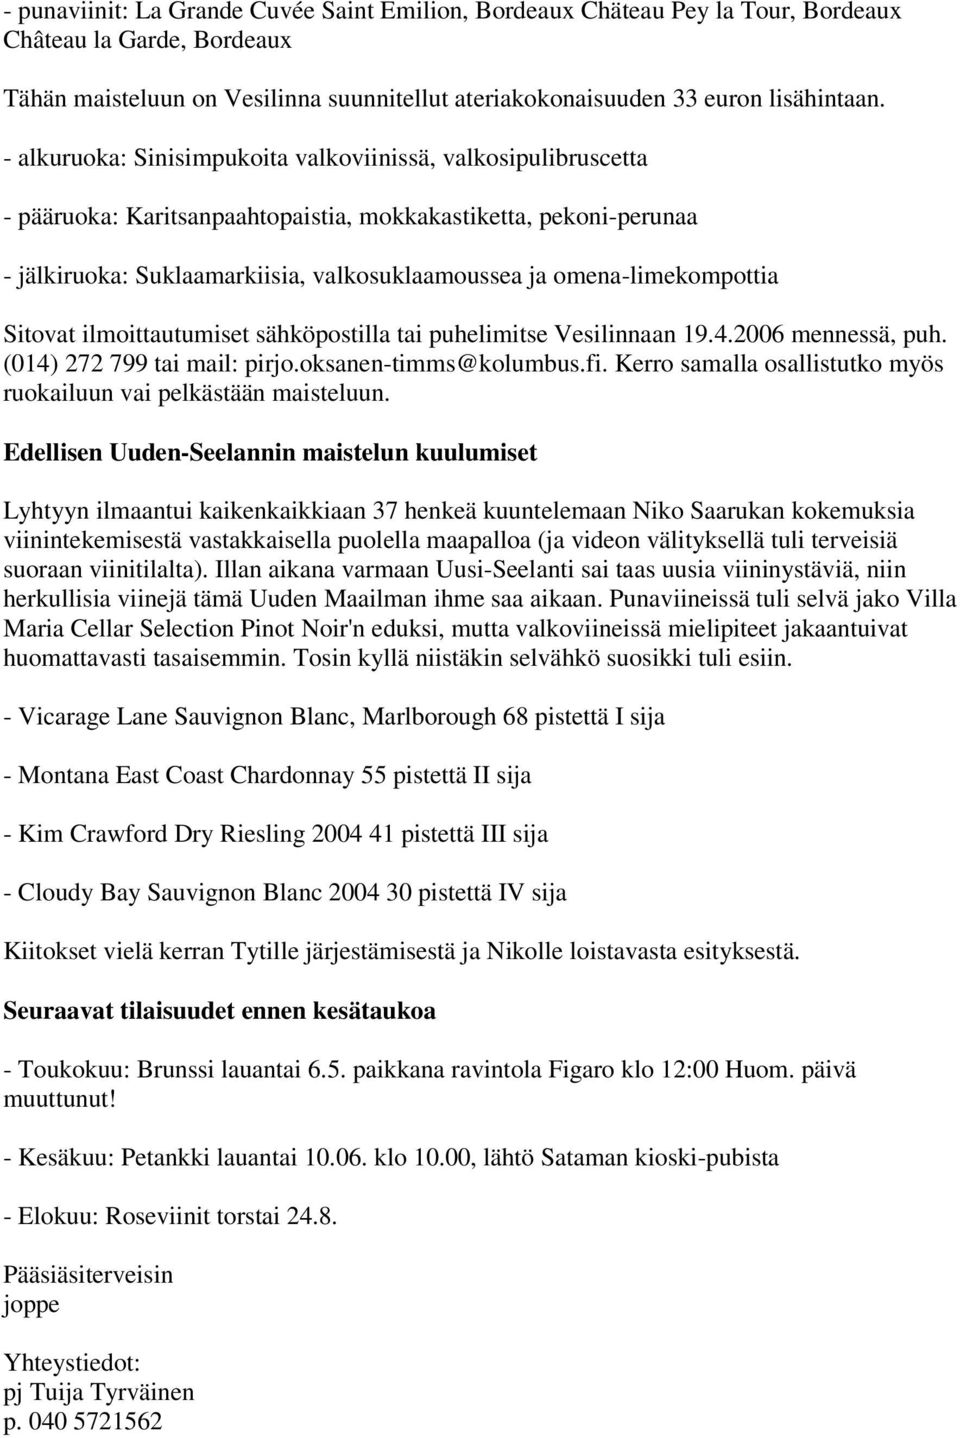 omena-limekompottia Sitovat ilmoittautumiset sähköpostilla tai puhelimitse Vesilinnaan 19.4.2006 mennessä, puh. (014) 272 799 tai mail: pirjo.oksanen-timms@kolumbus.fi.